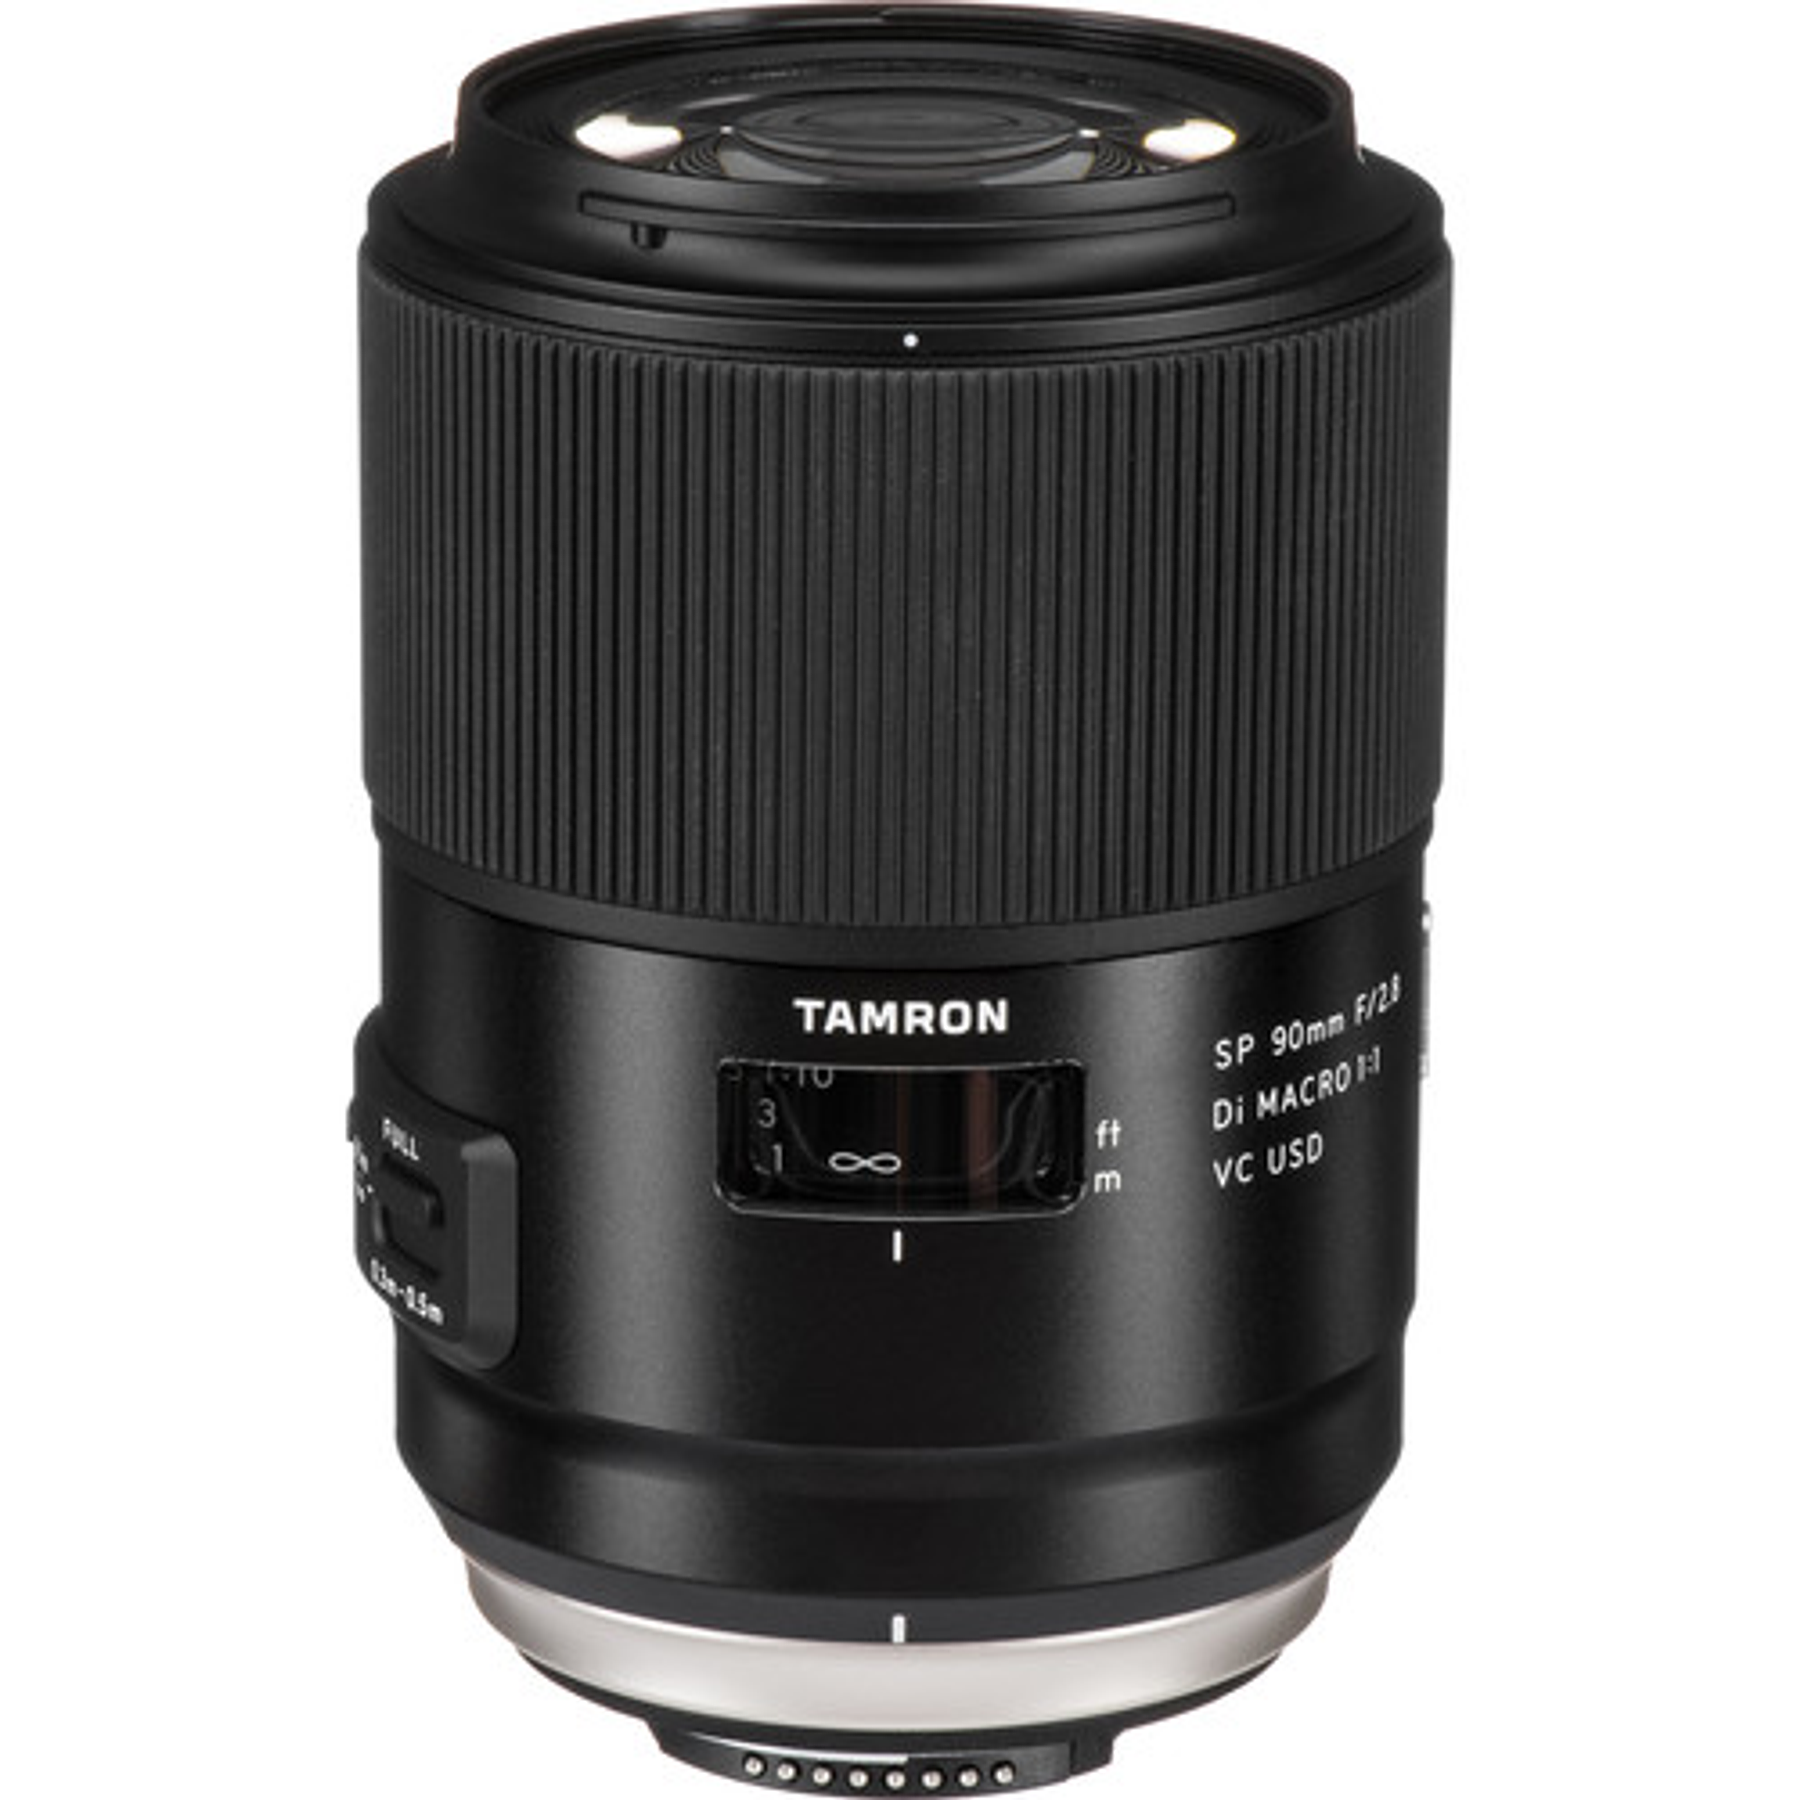 Tamron Lente  SP 90mm  F/2.8 Di Macro 1:1 VC USD para Canon/Nikon